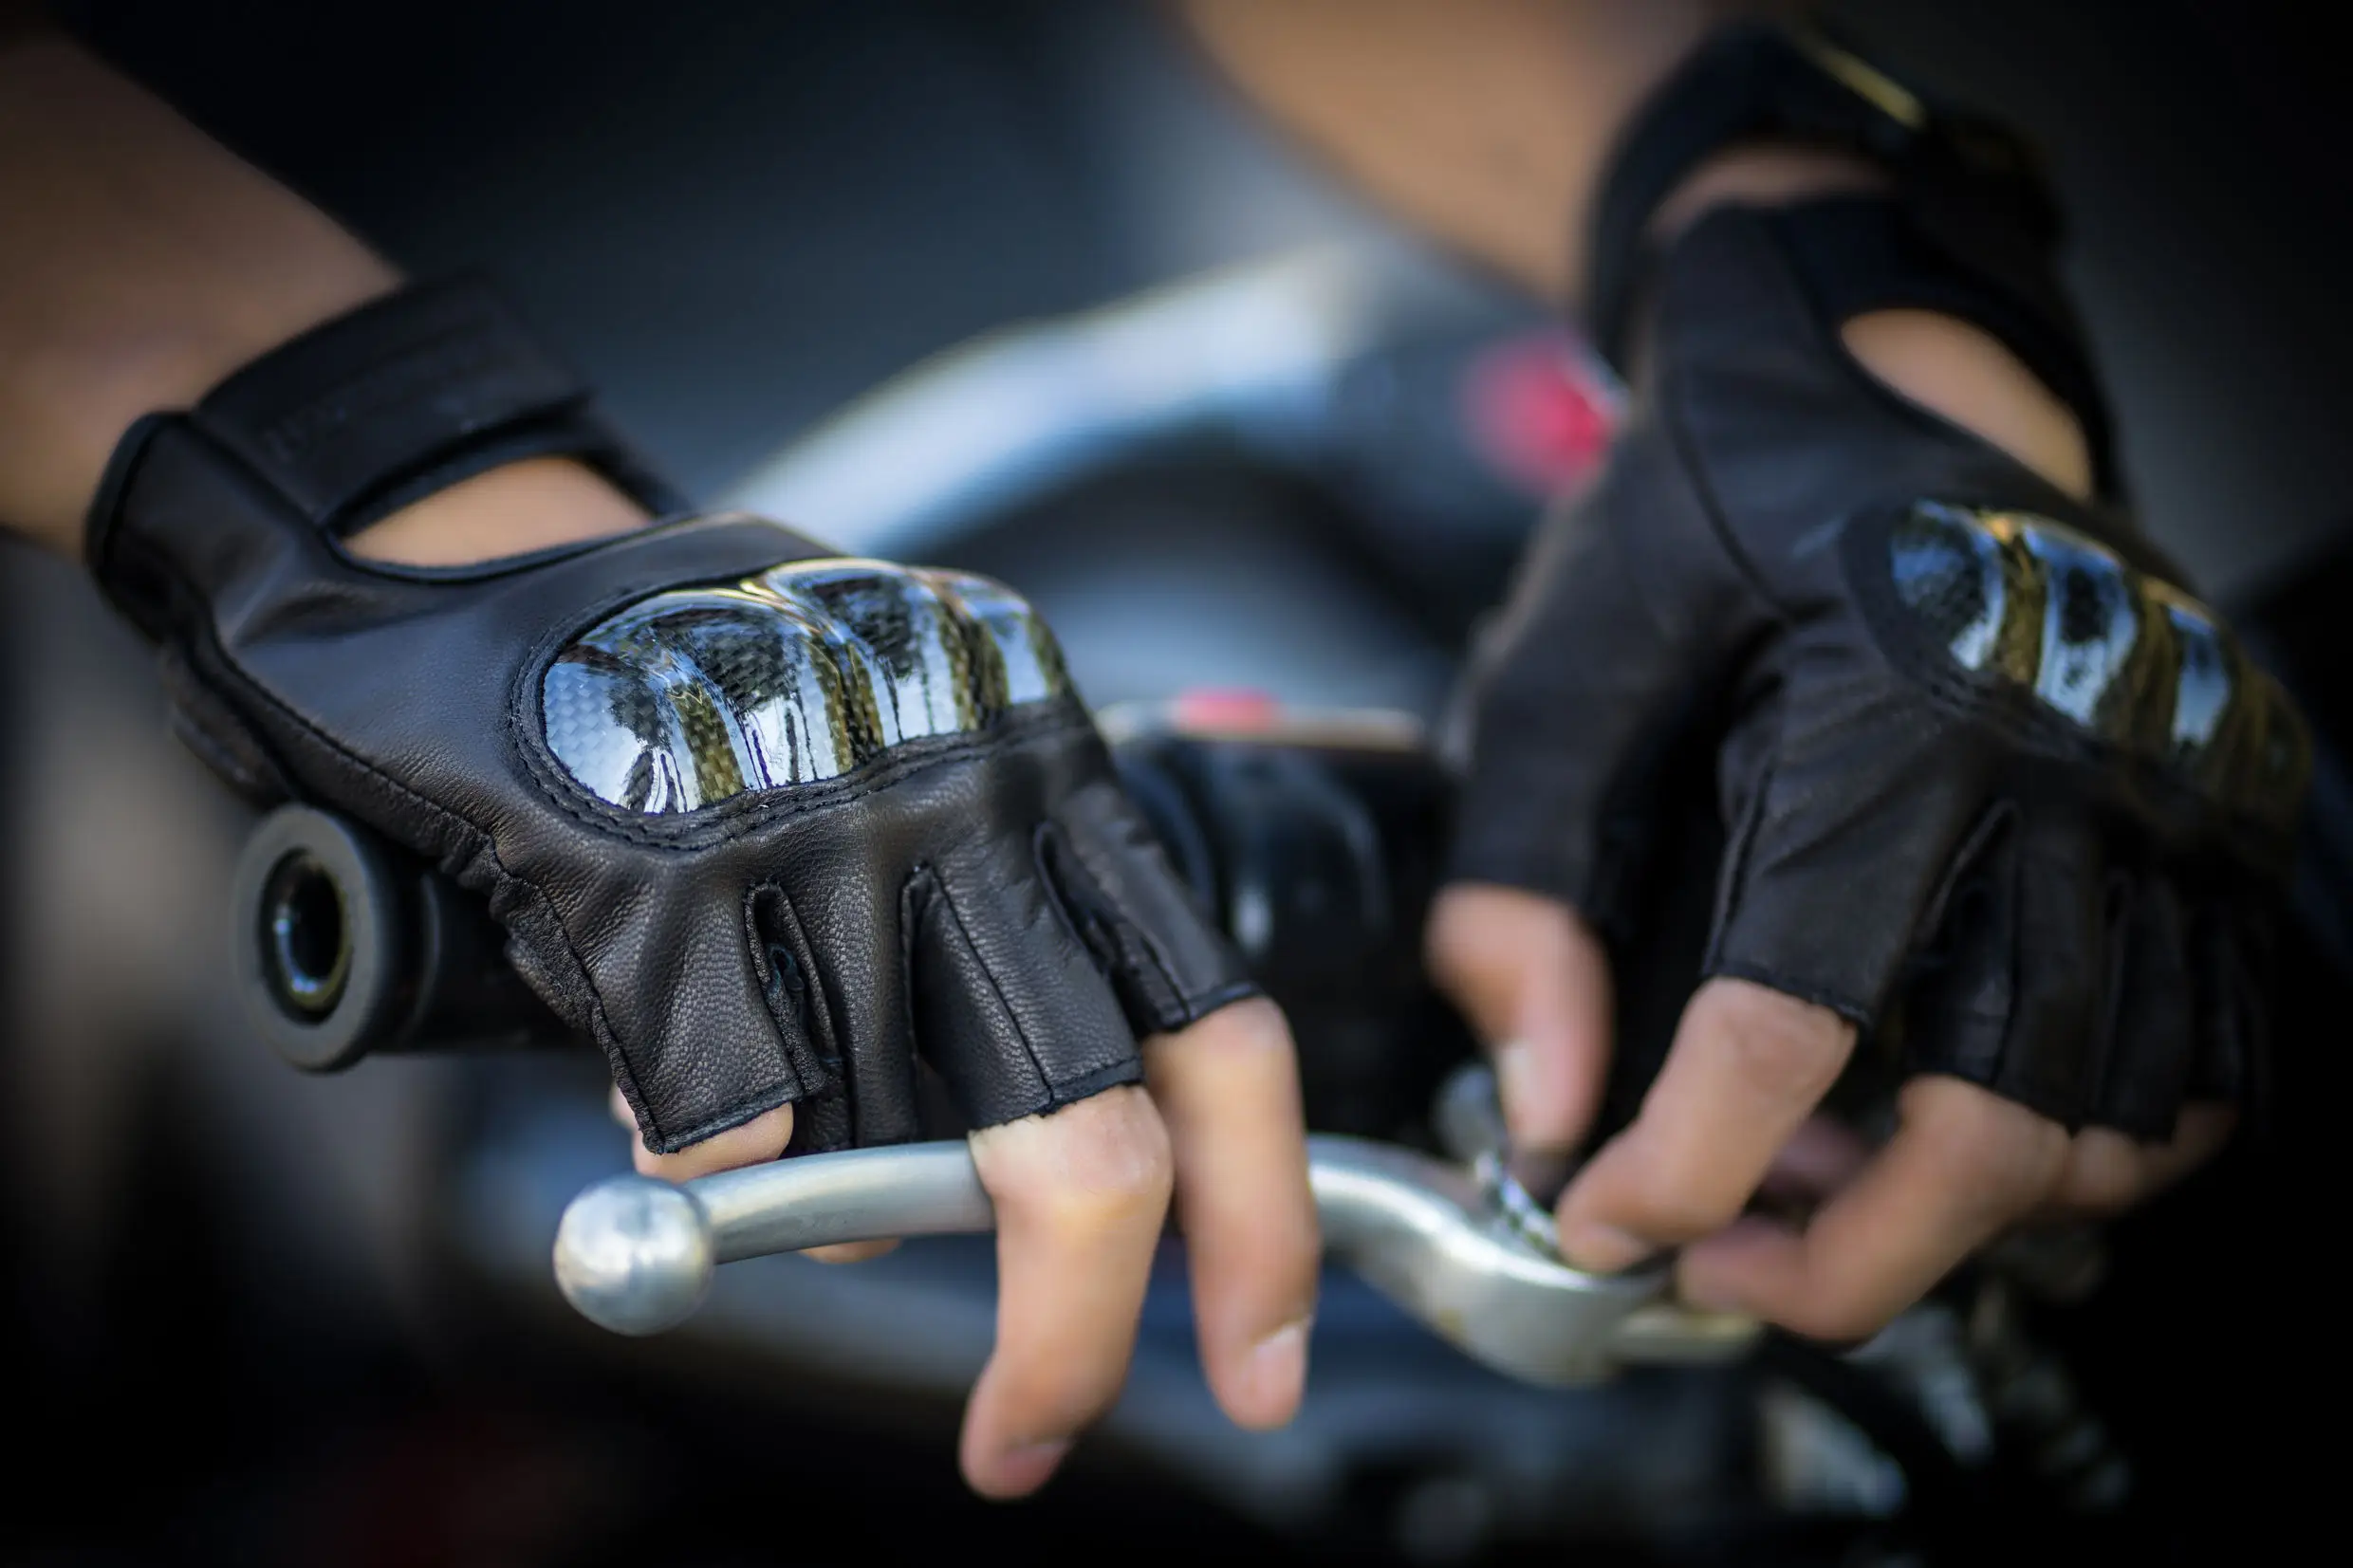 Mediana Prime Leather SIN Dedos Moto Ciclismo Guantes para Conducir Medio Dedo 309-312-313-314 312-Negro 